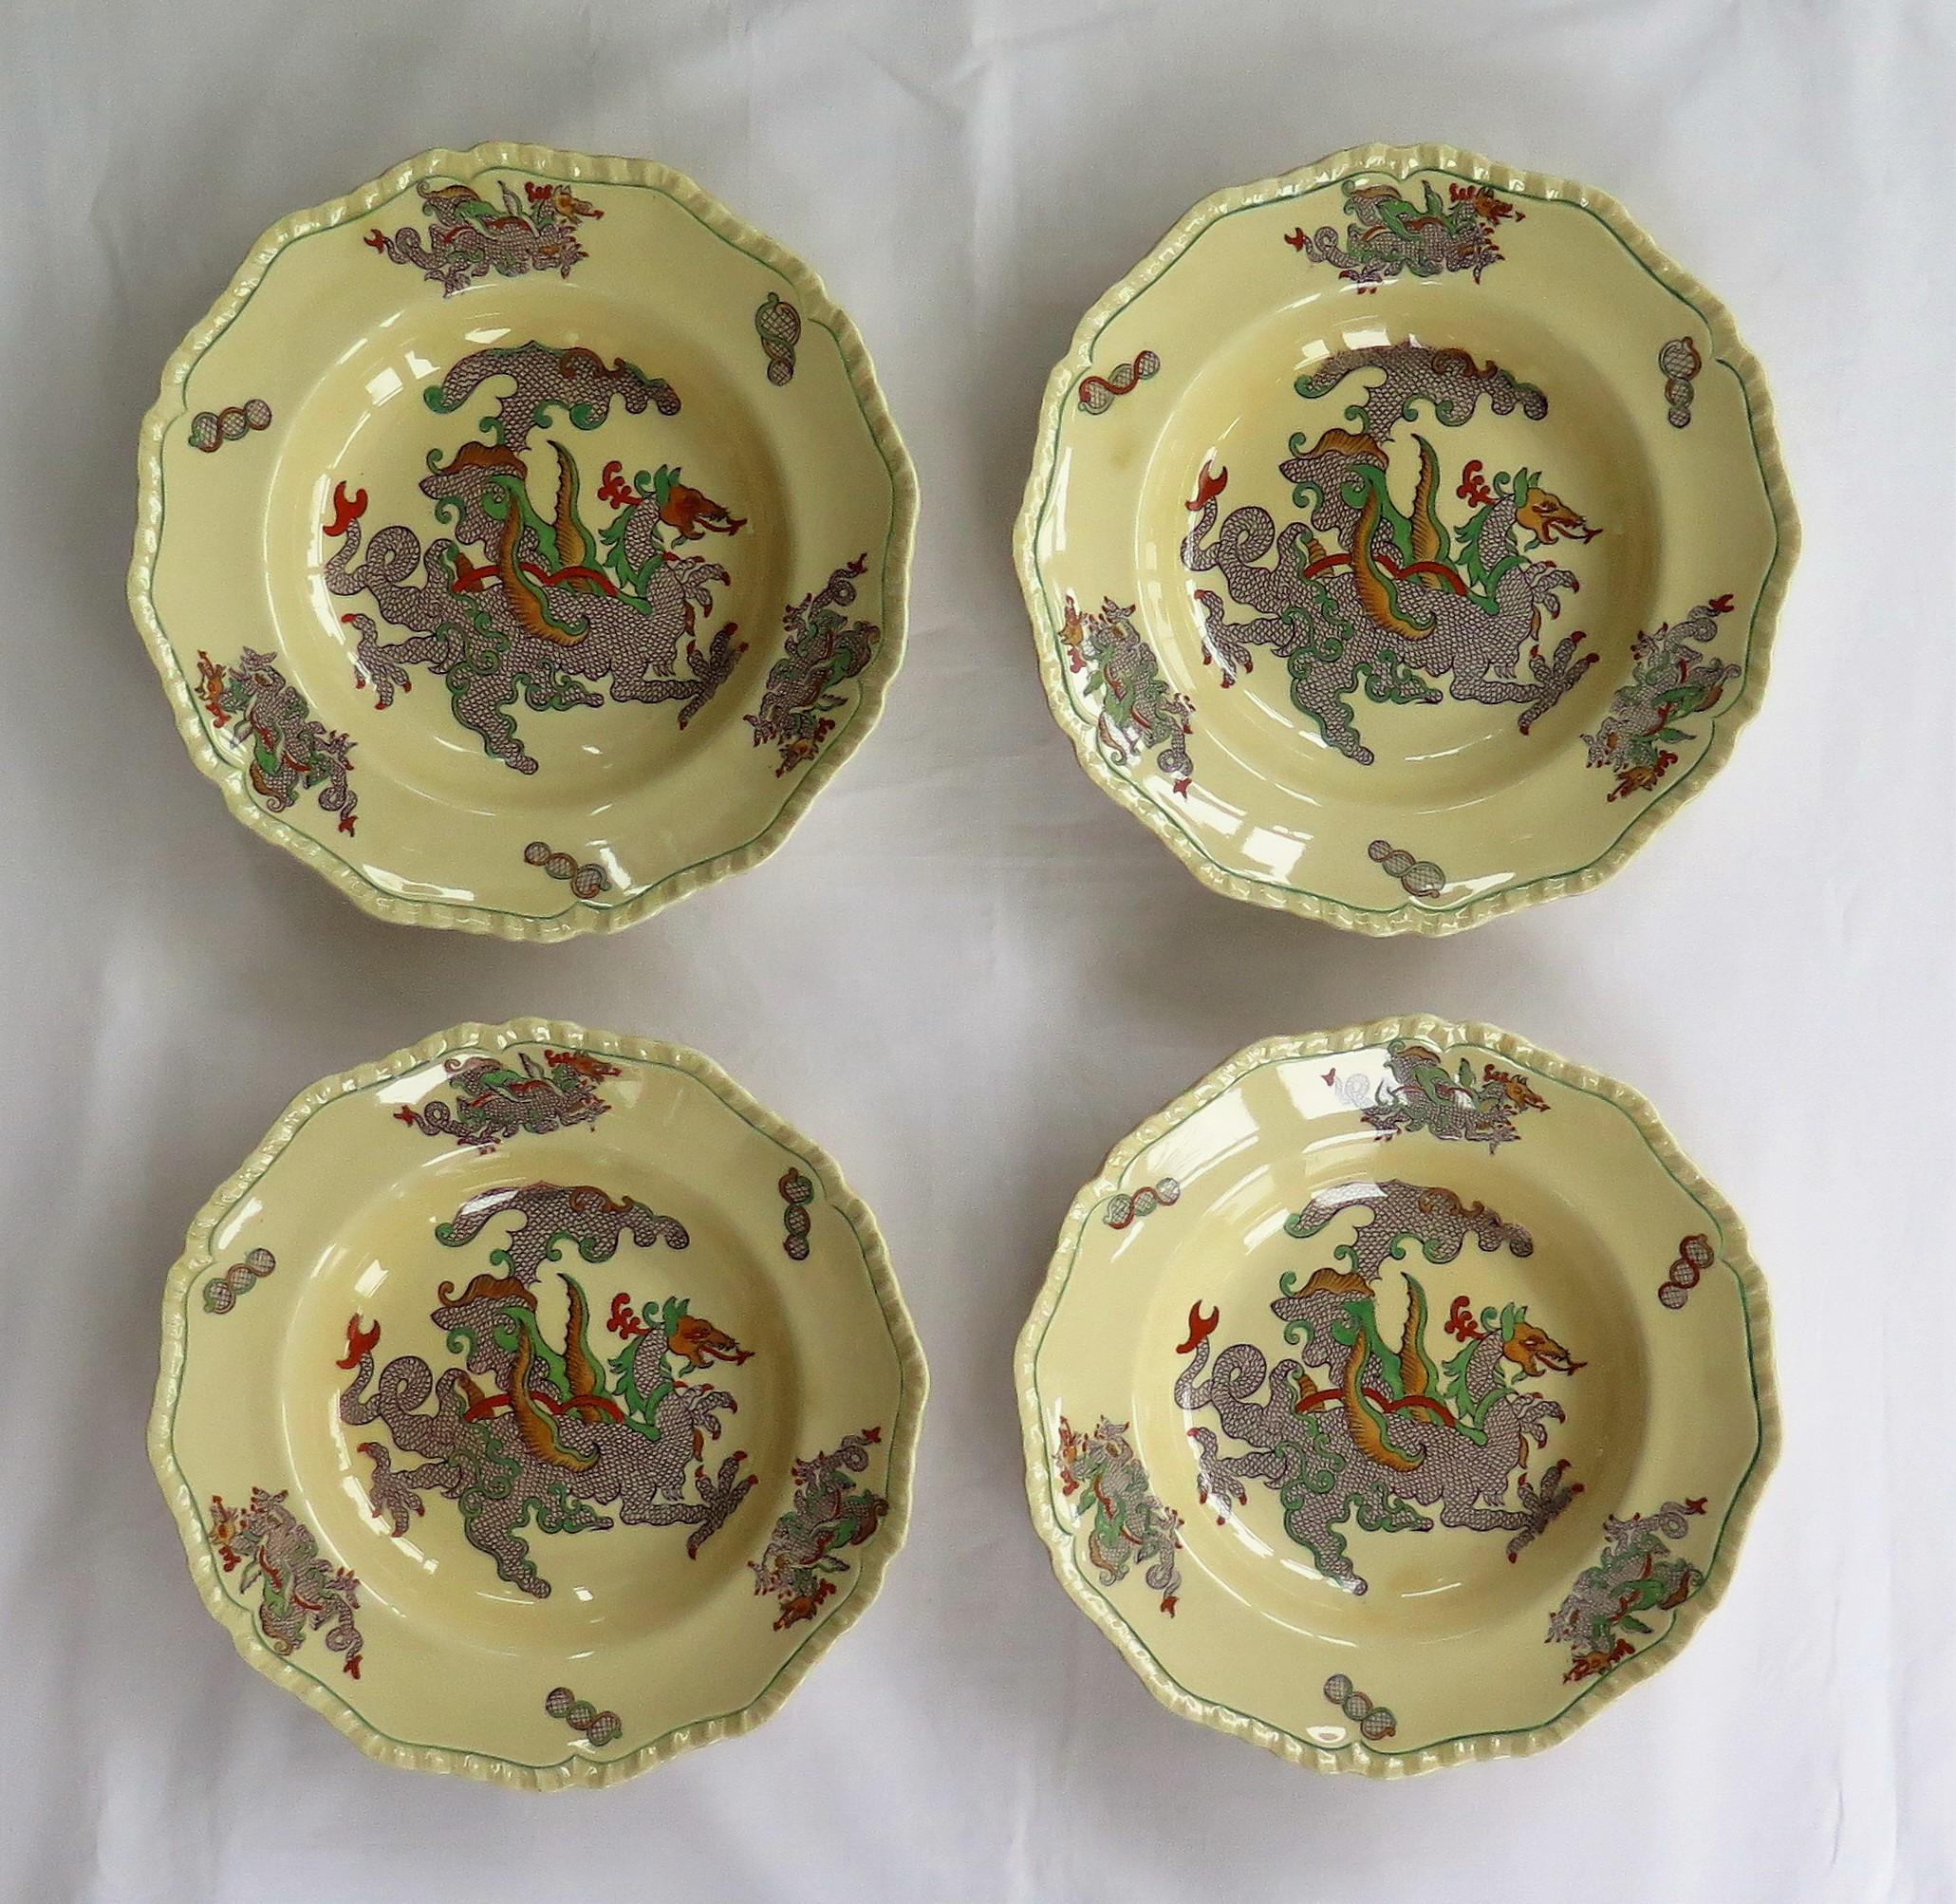 mason plates and bowls